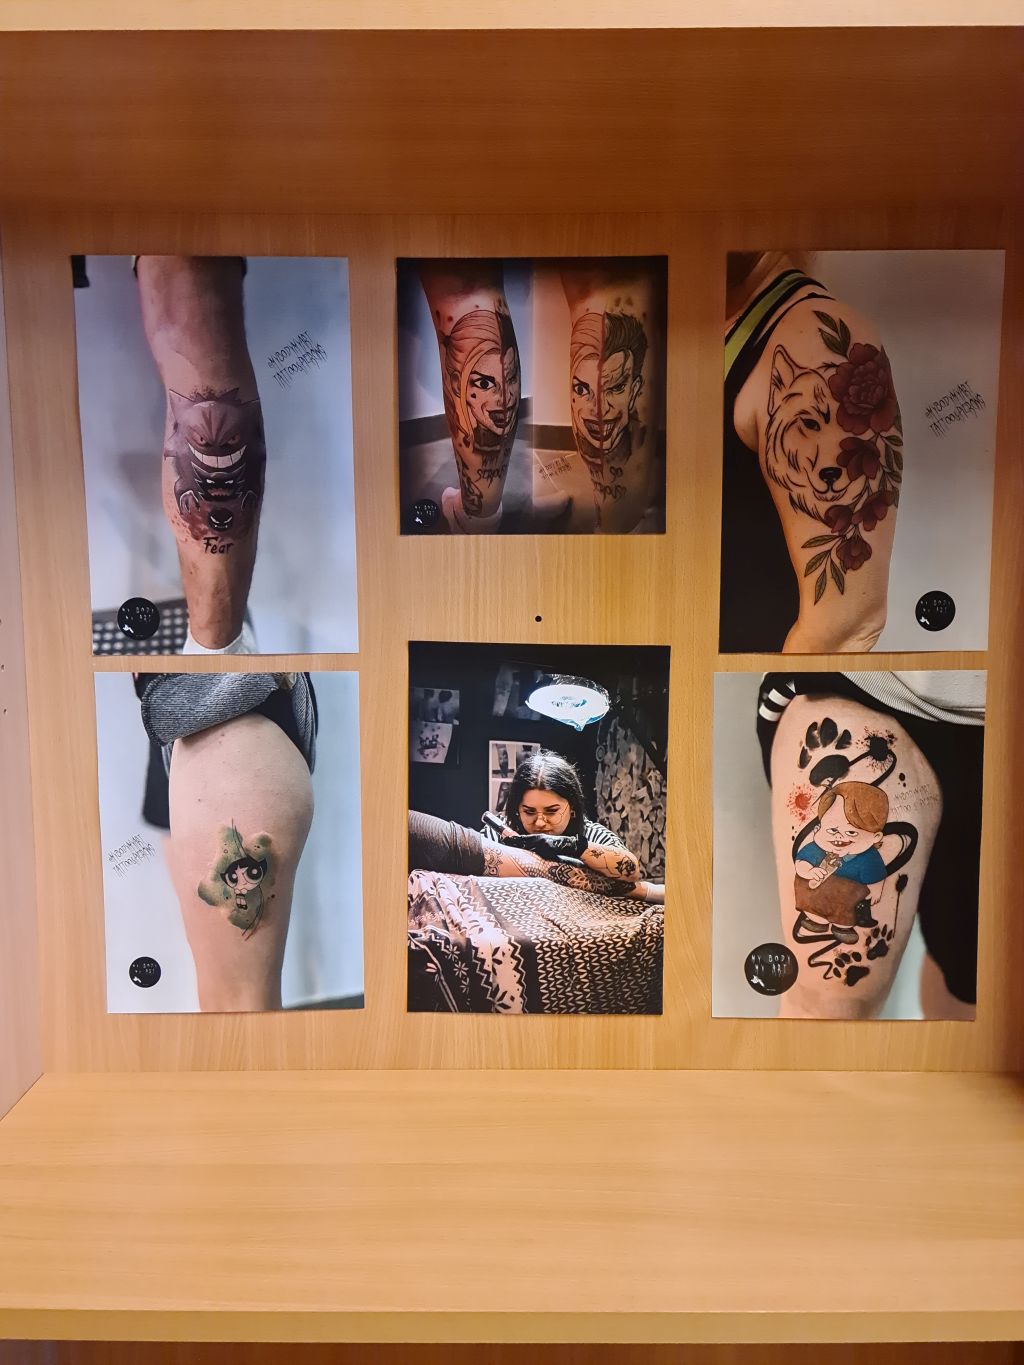 Zdjęcia tatuaży we wnęce regału z książkami